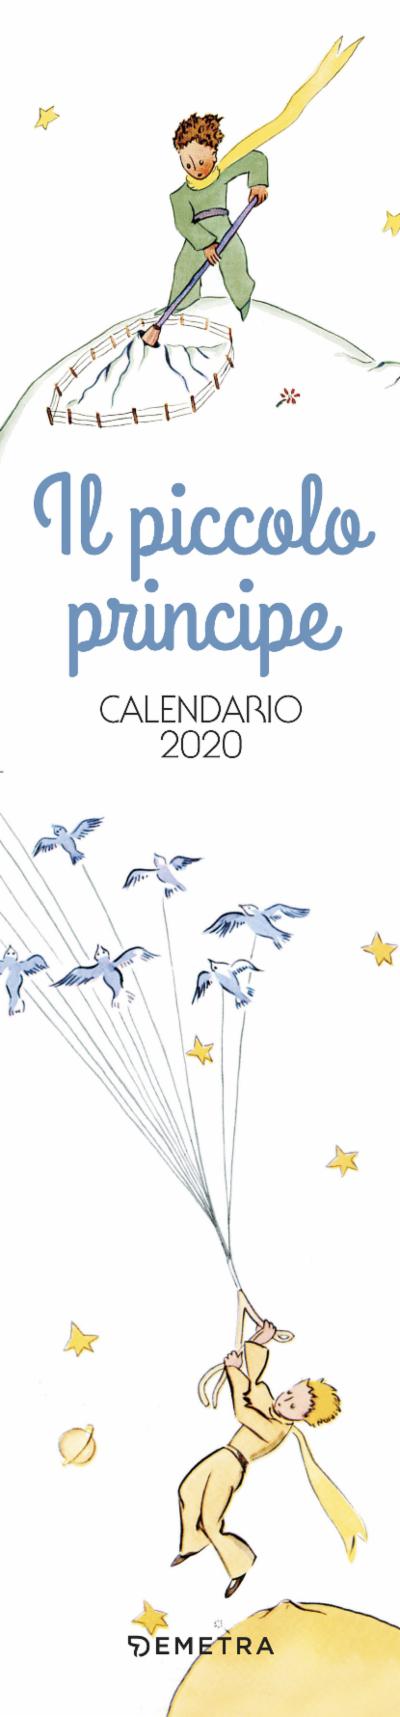 Il piccolo principe. Calendario 2020